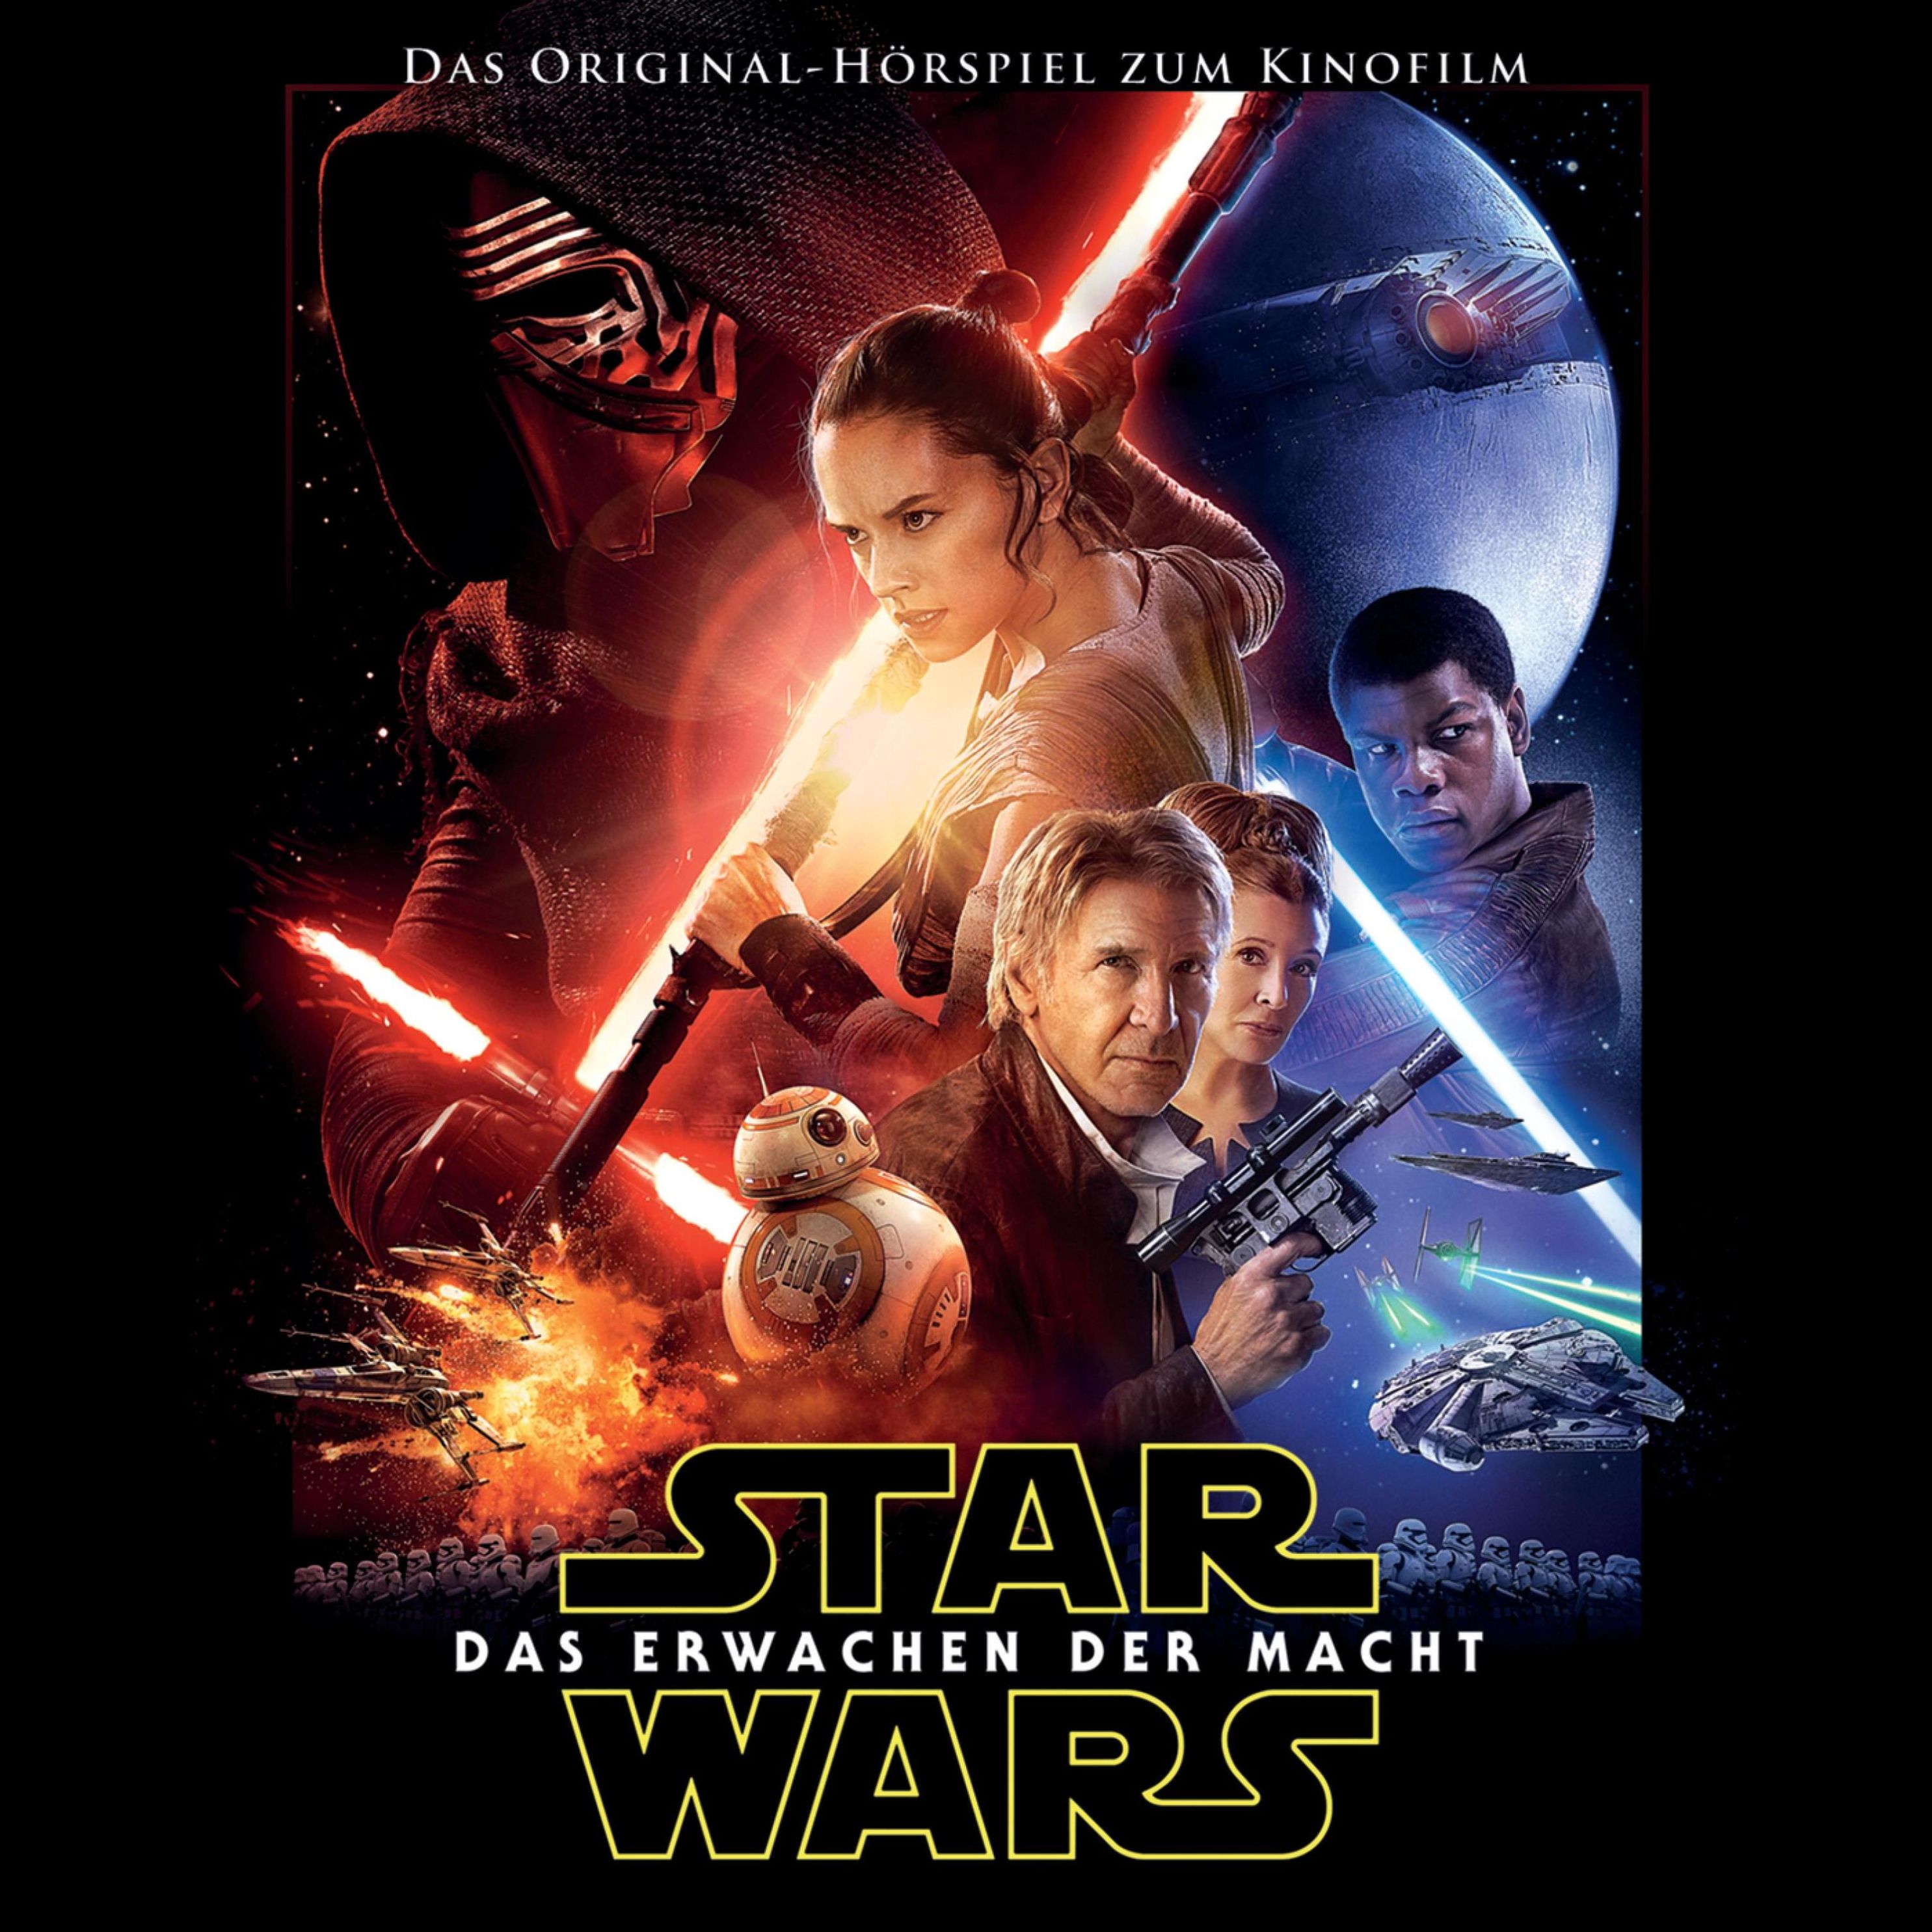 Star Wars - Star Wars: Das Erwachen der Macht Hörbuch Download